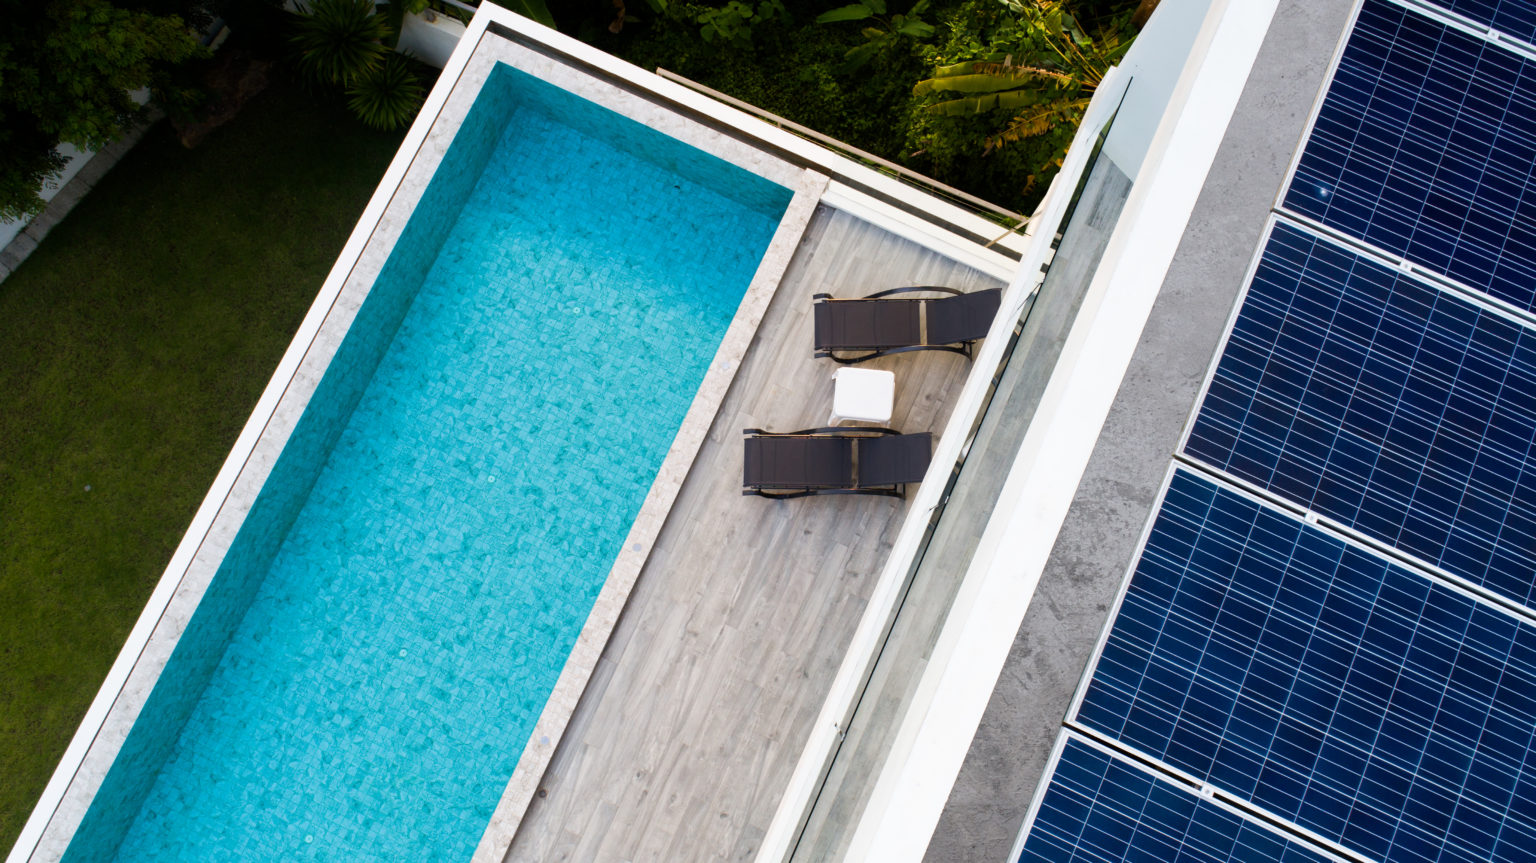 Aquecimento para piscina: Foto aérea de piscina com painéis solares para aquecer a água.